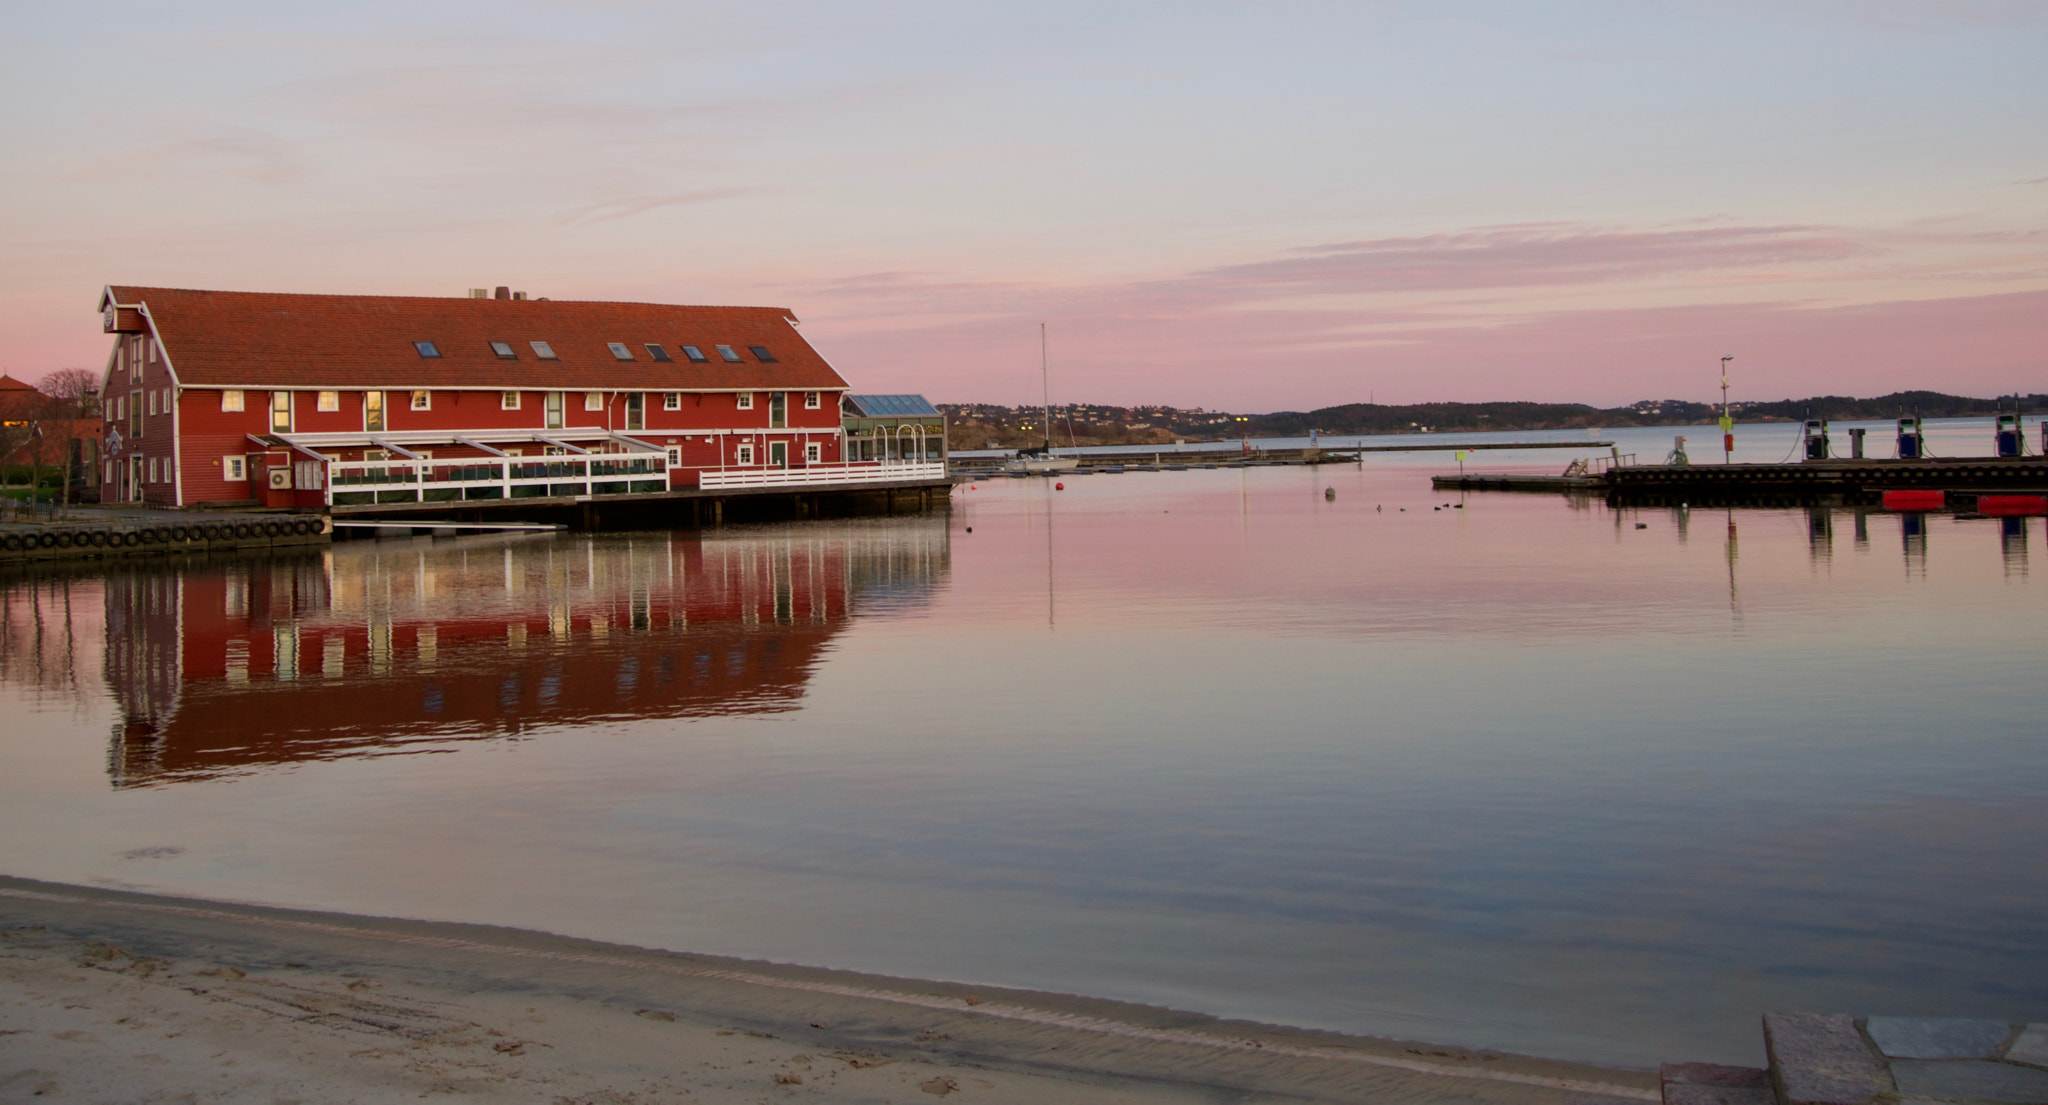 Sony a6000 sample photo. Kristiansand beach photography